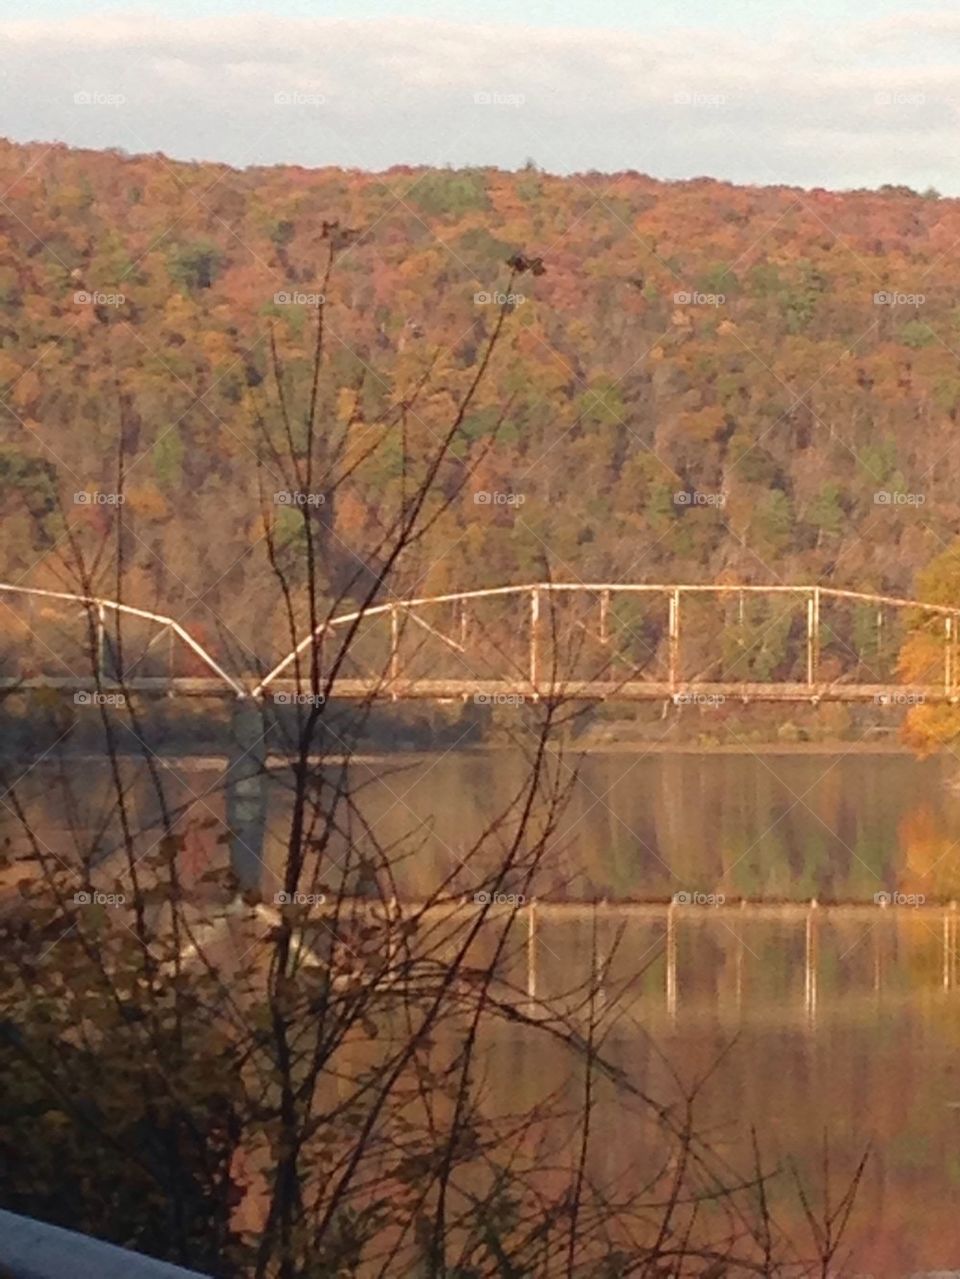 Fall bridge